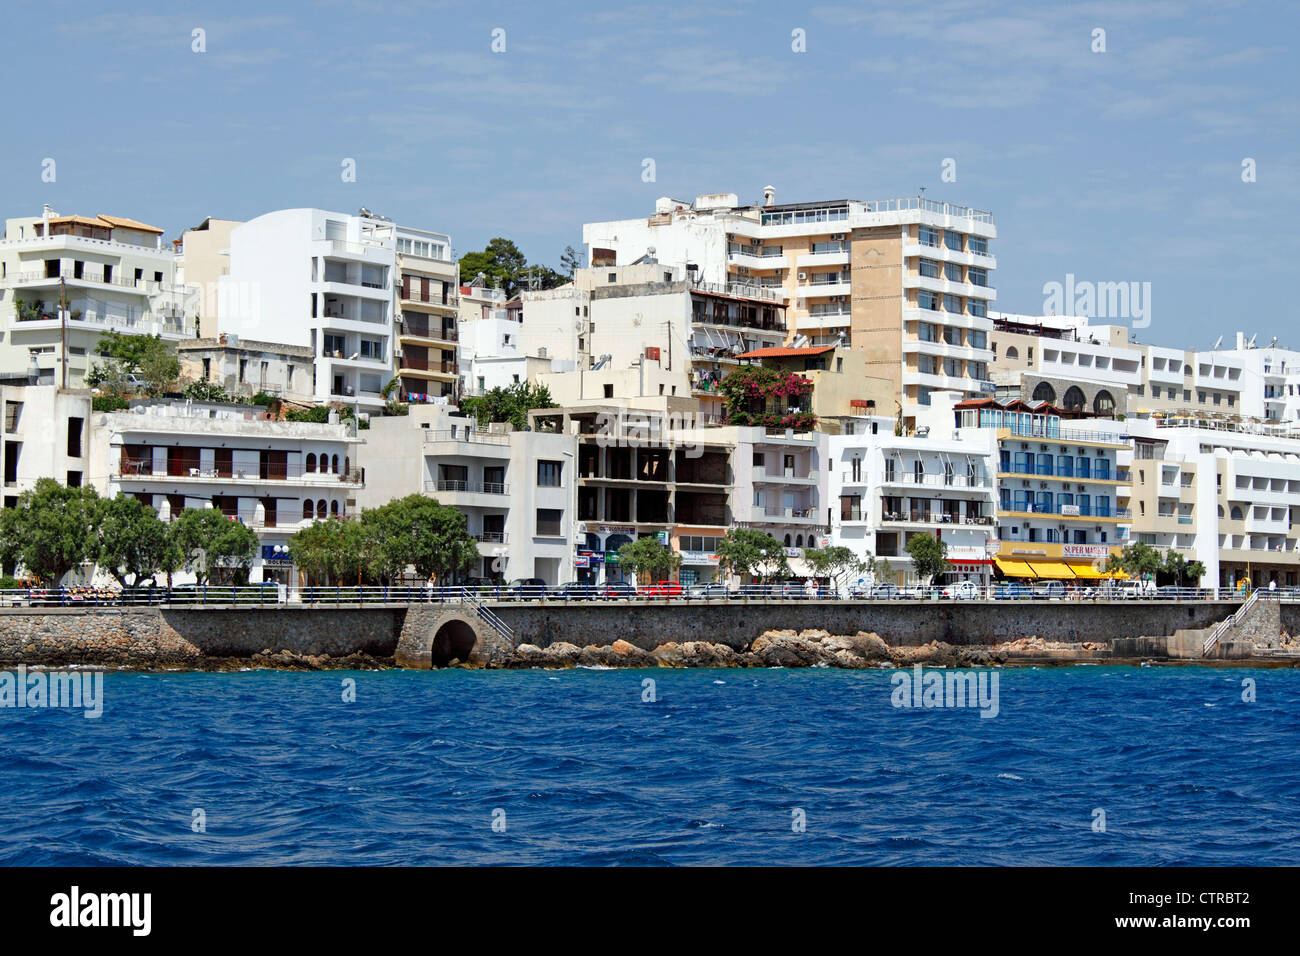 Le pittoresque front de mer à Aghios Nikolaos SUR L'île grecque de Crète. L'EUROPE. Banque D'Images